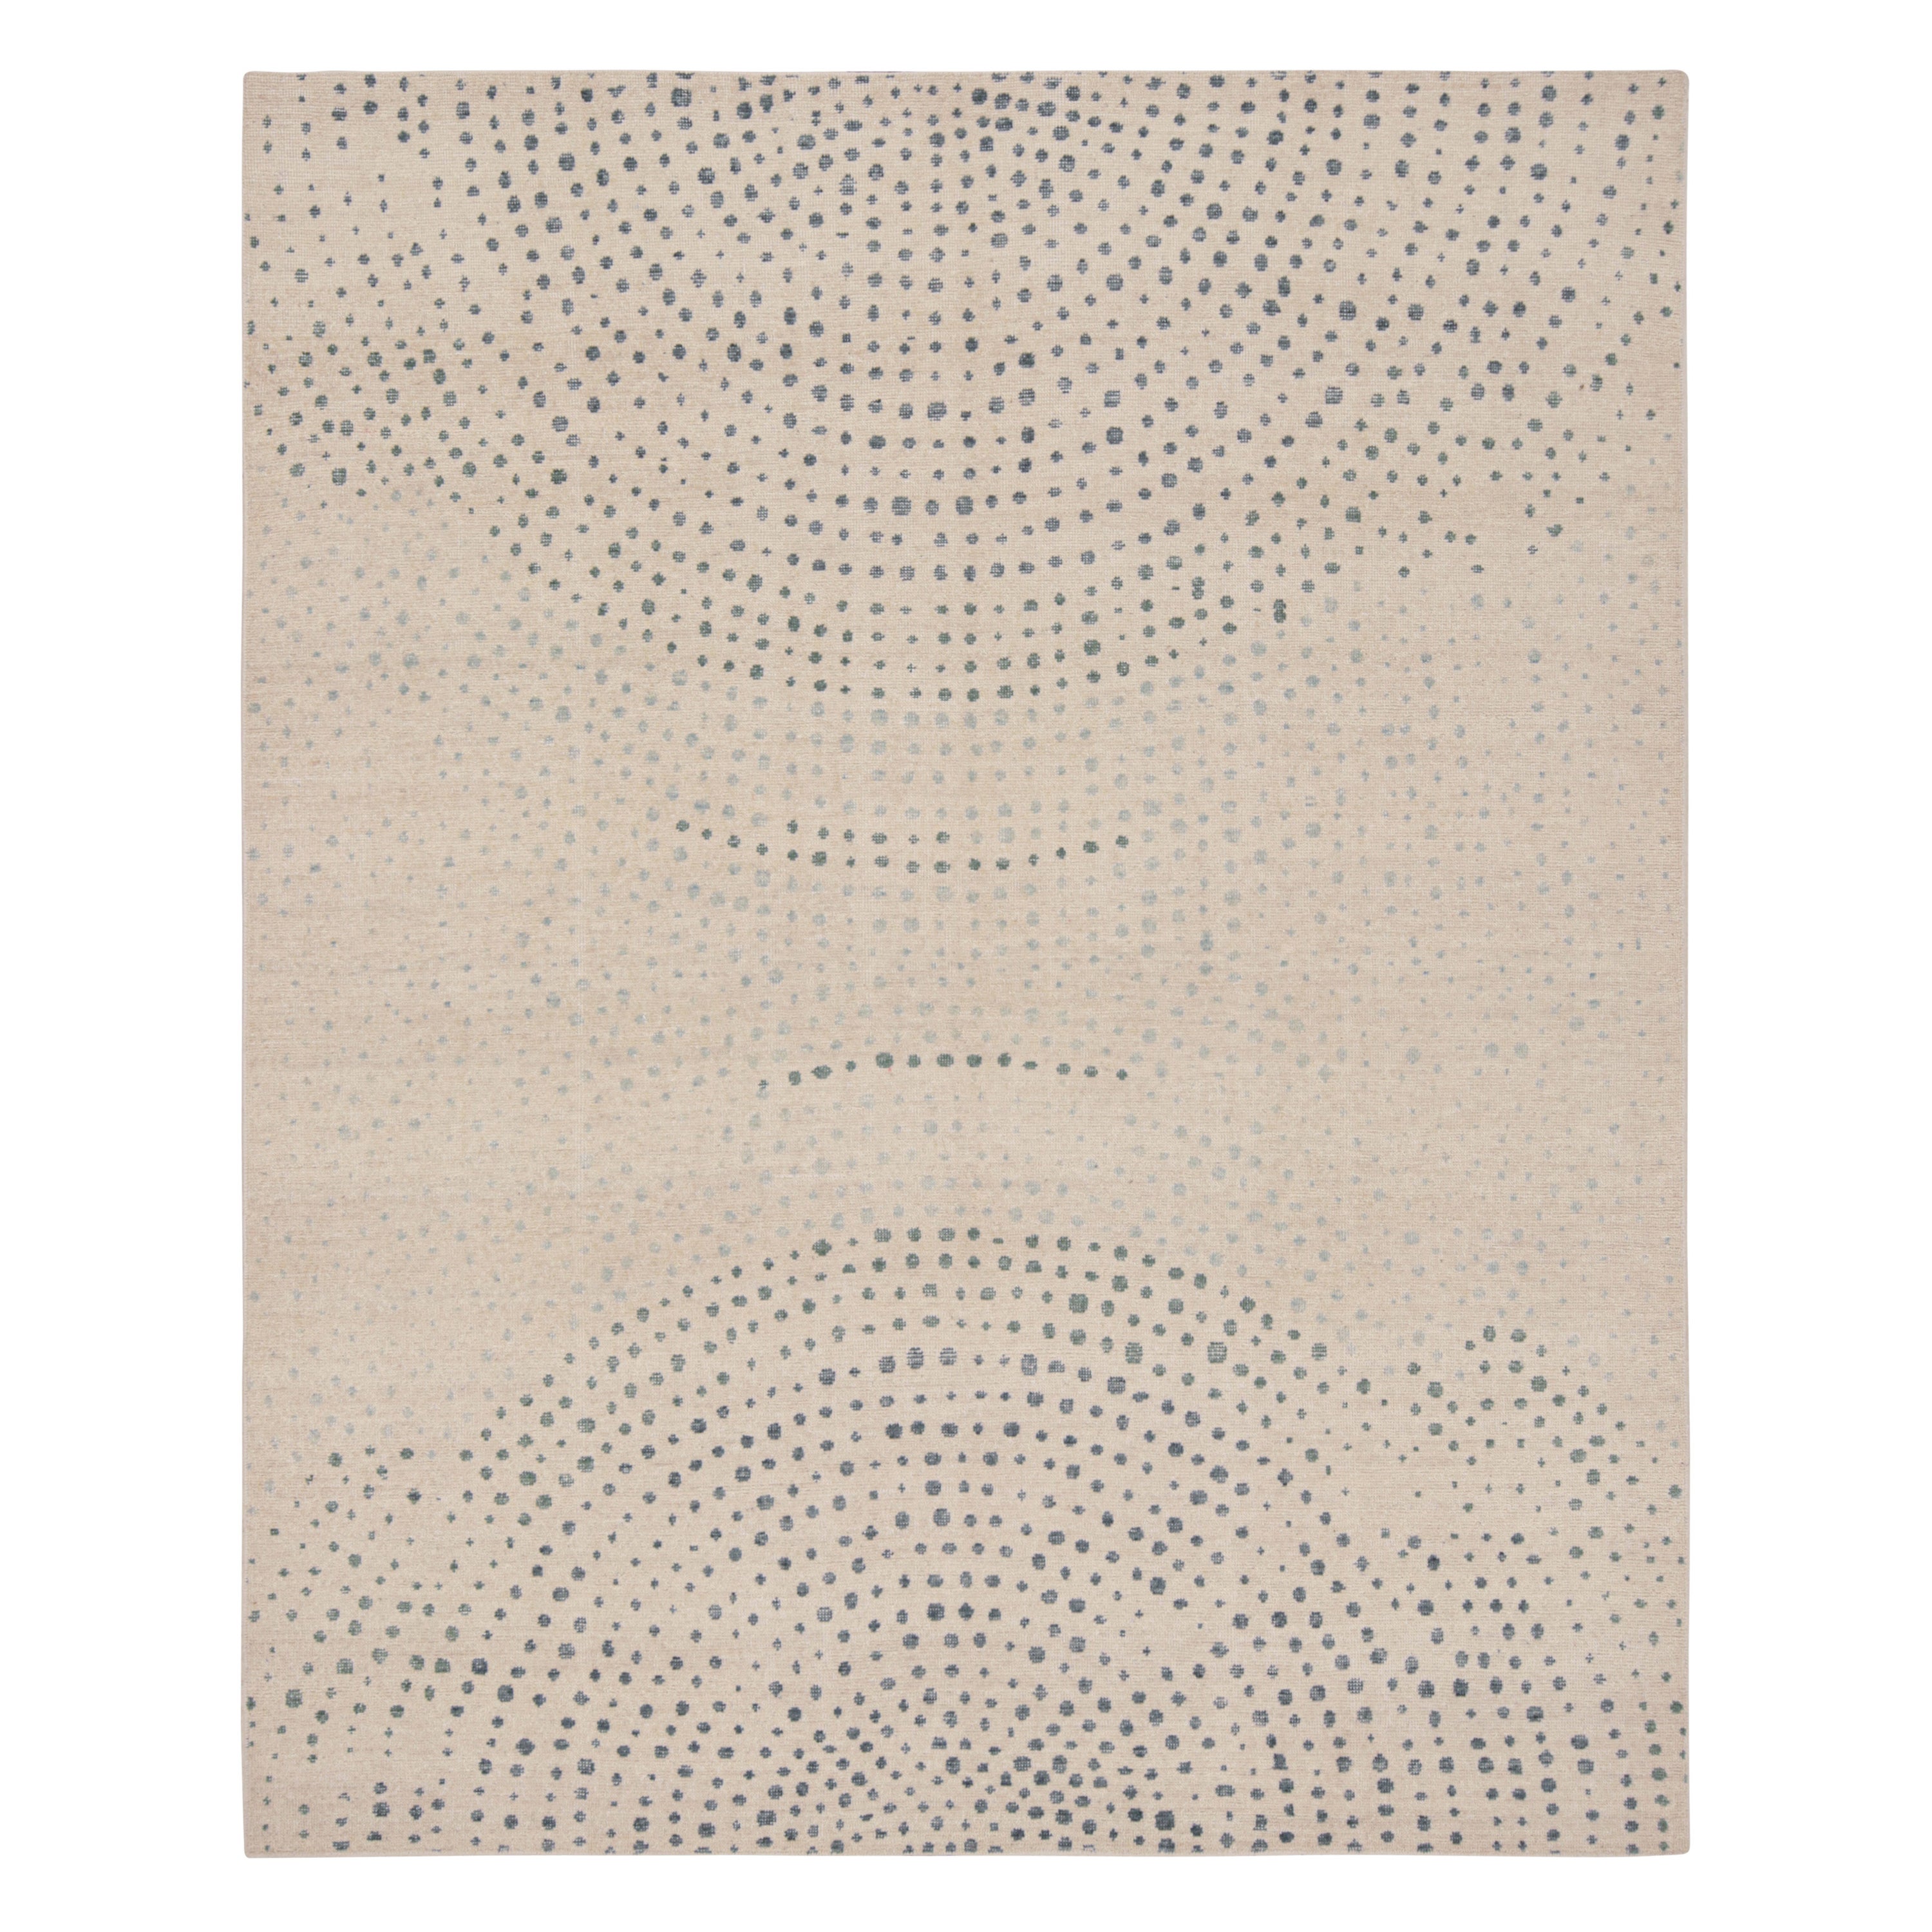 Rug & Kilim's Moderner abstrakter Teppich in Beige mit blauen Punktmustern 